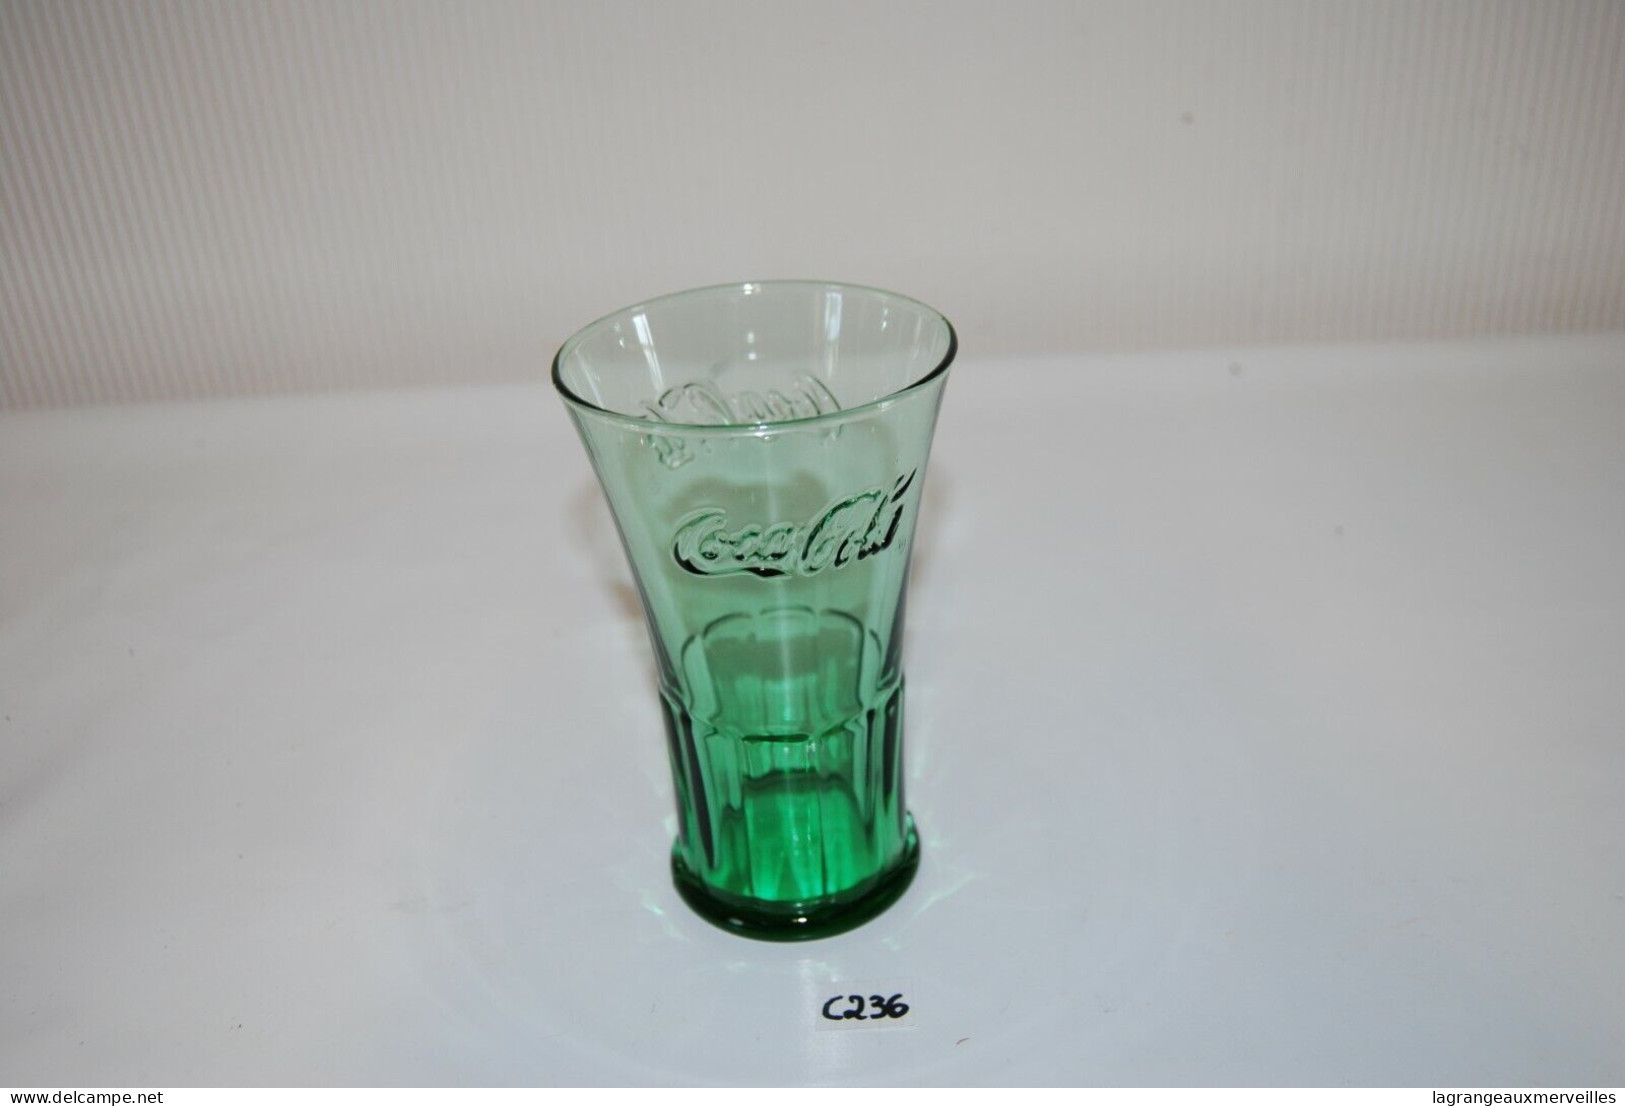 C236 Coca Cola - Ancien Verre De Collection - Glas Collector - Tazas & Vasos